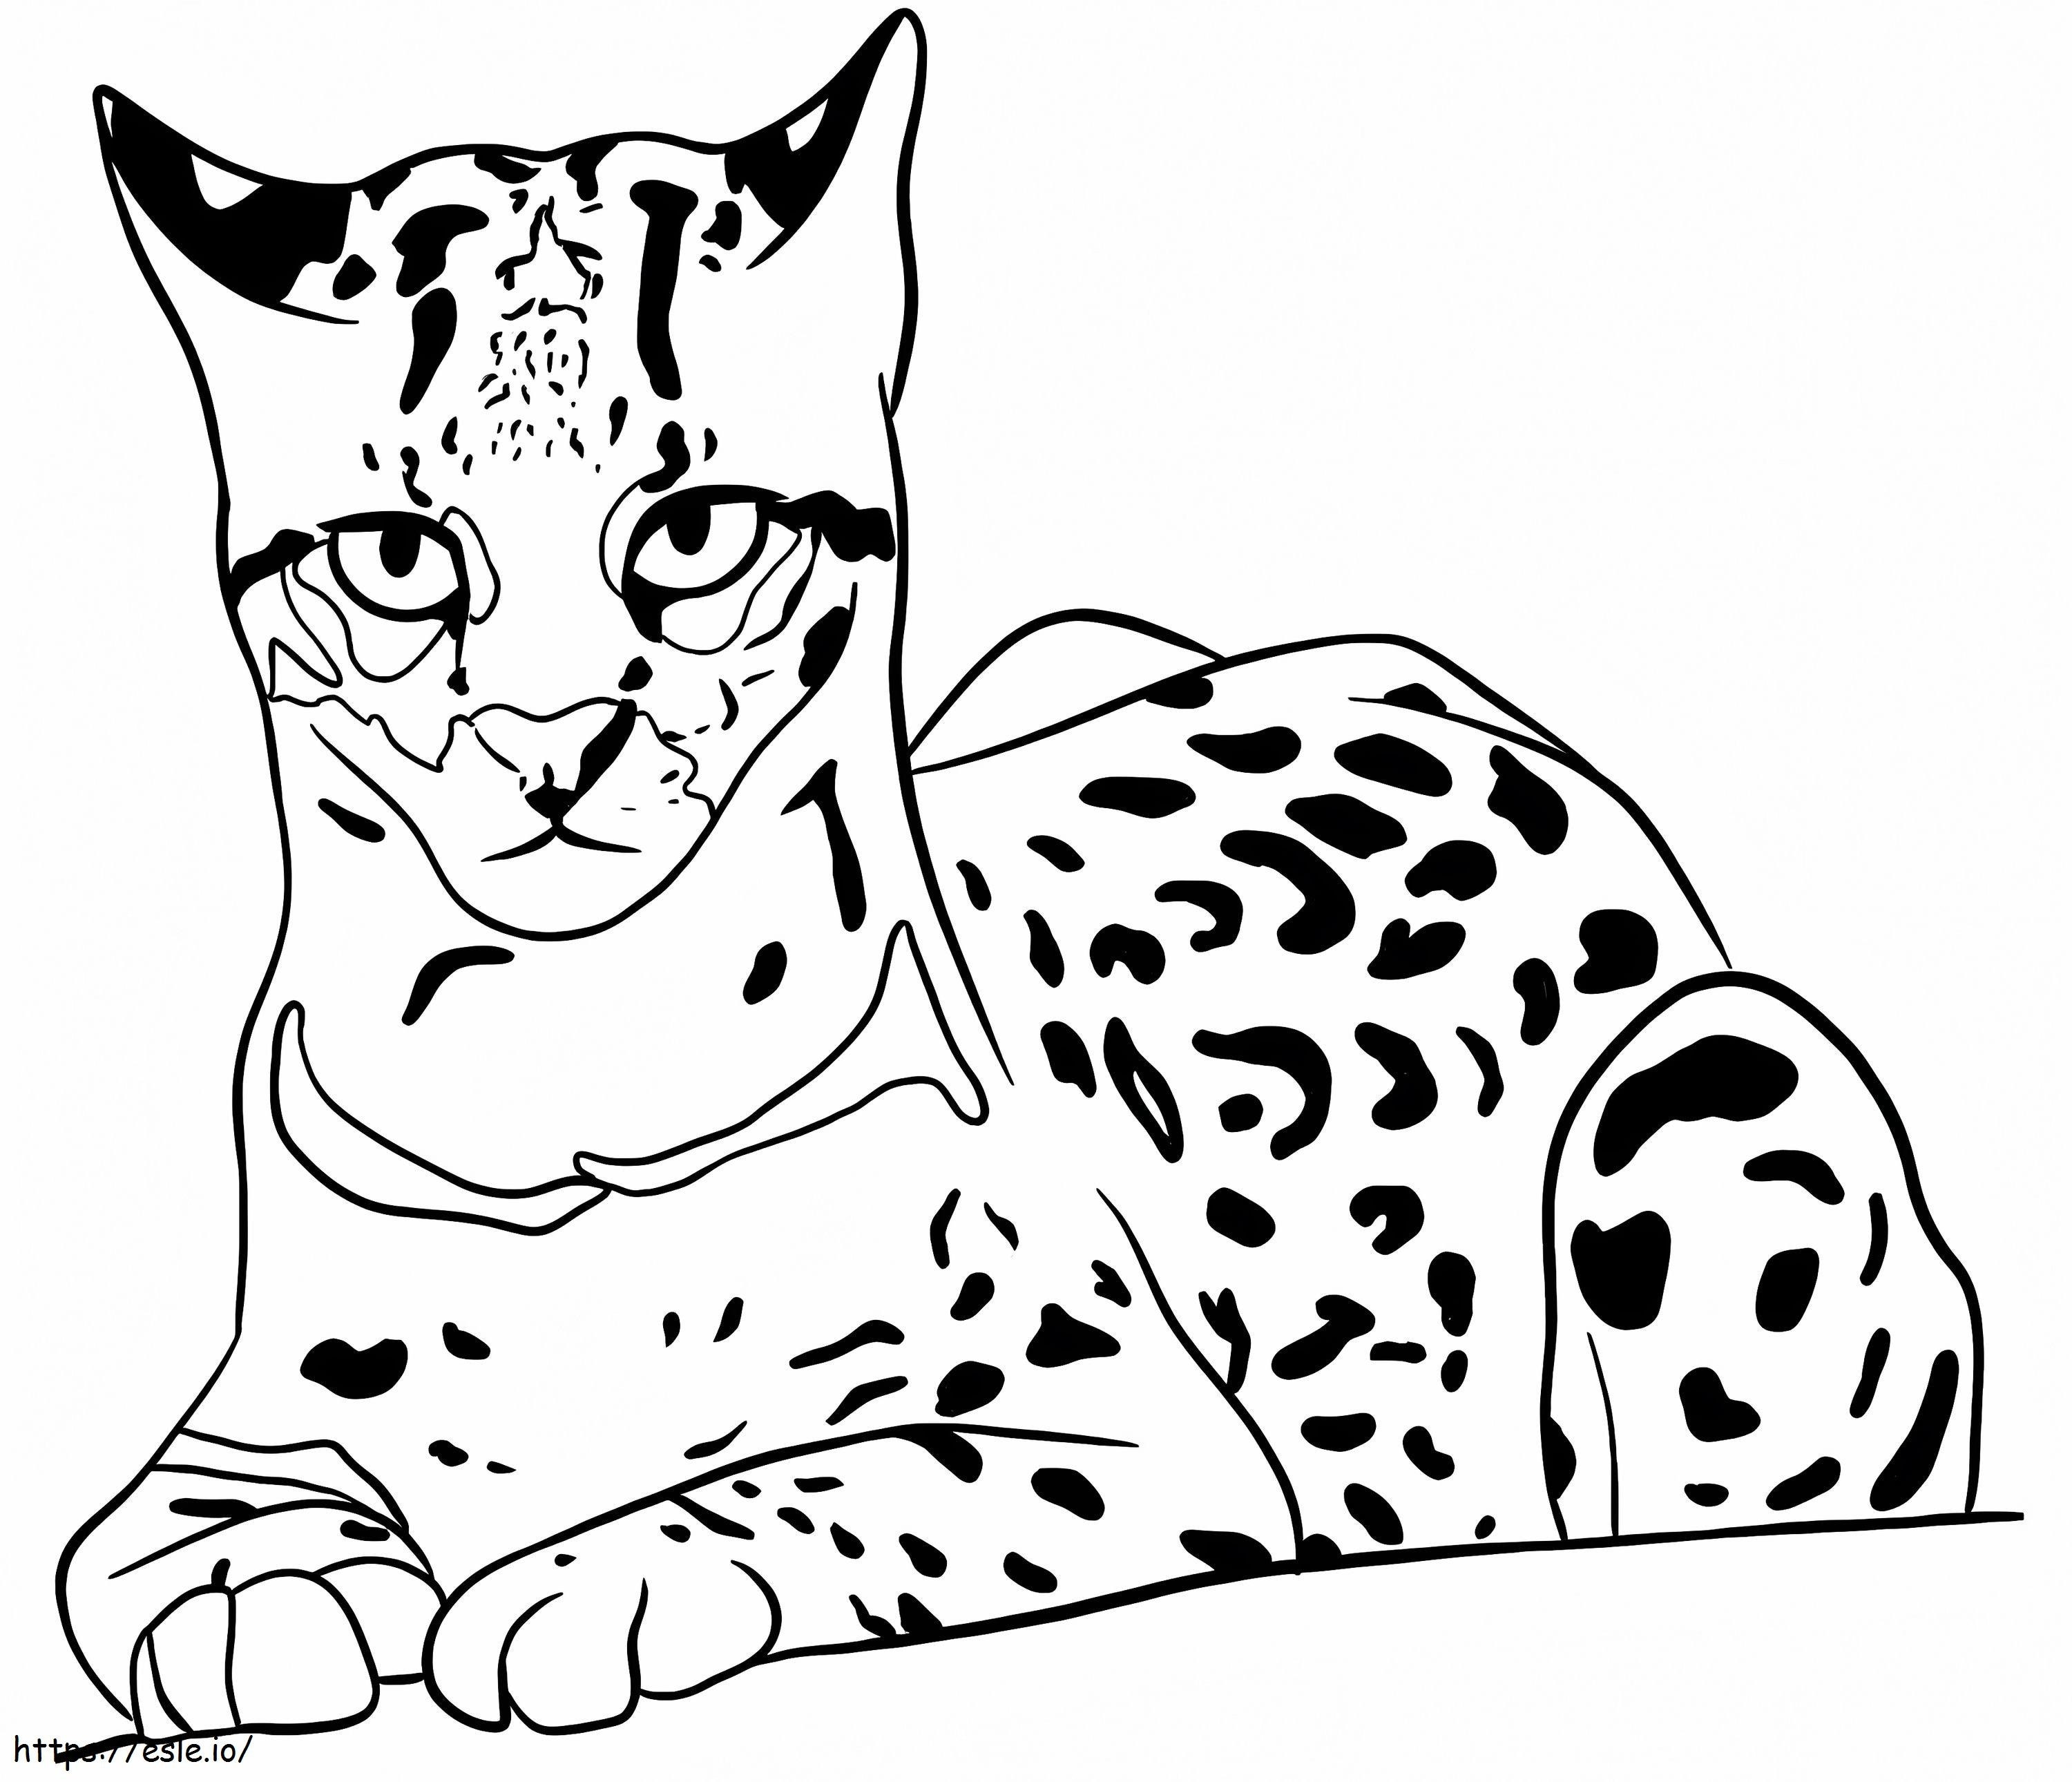 Gattopardo normale da colorare